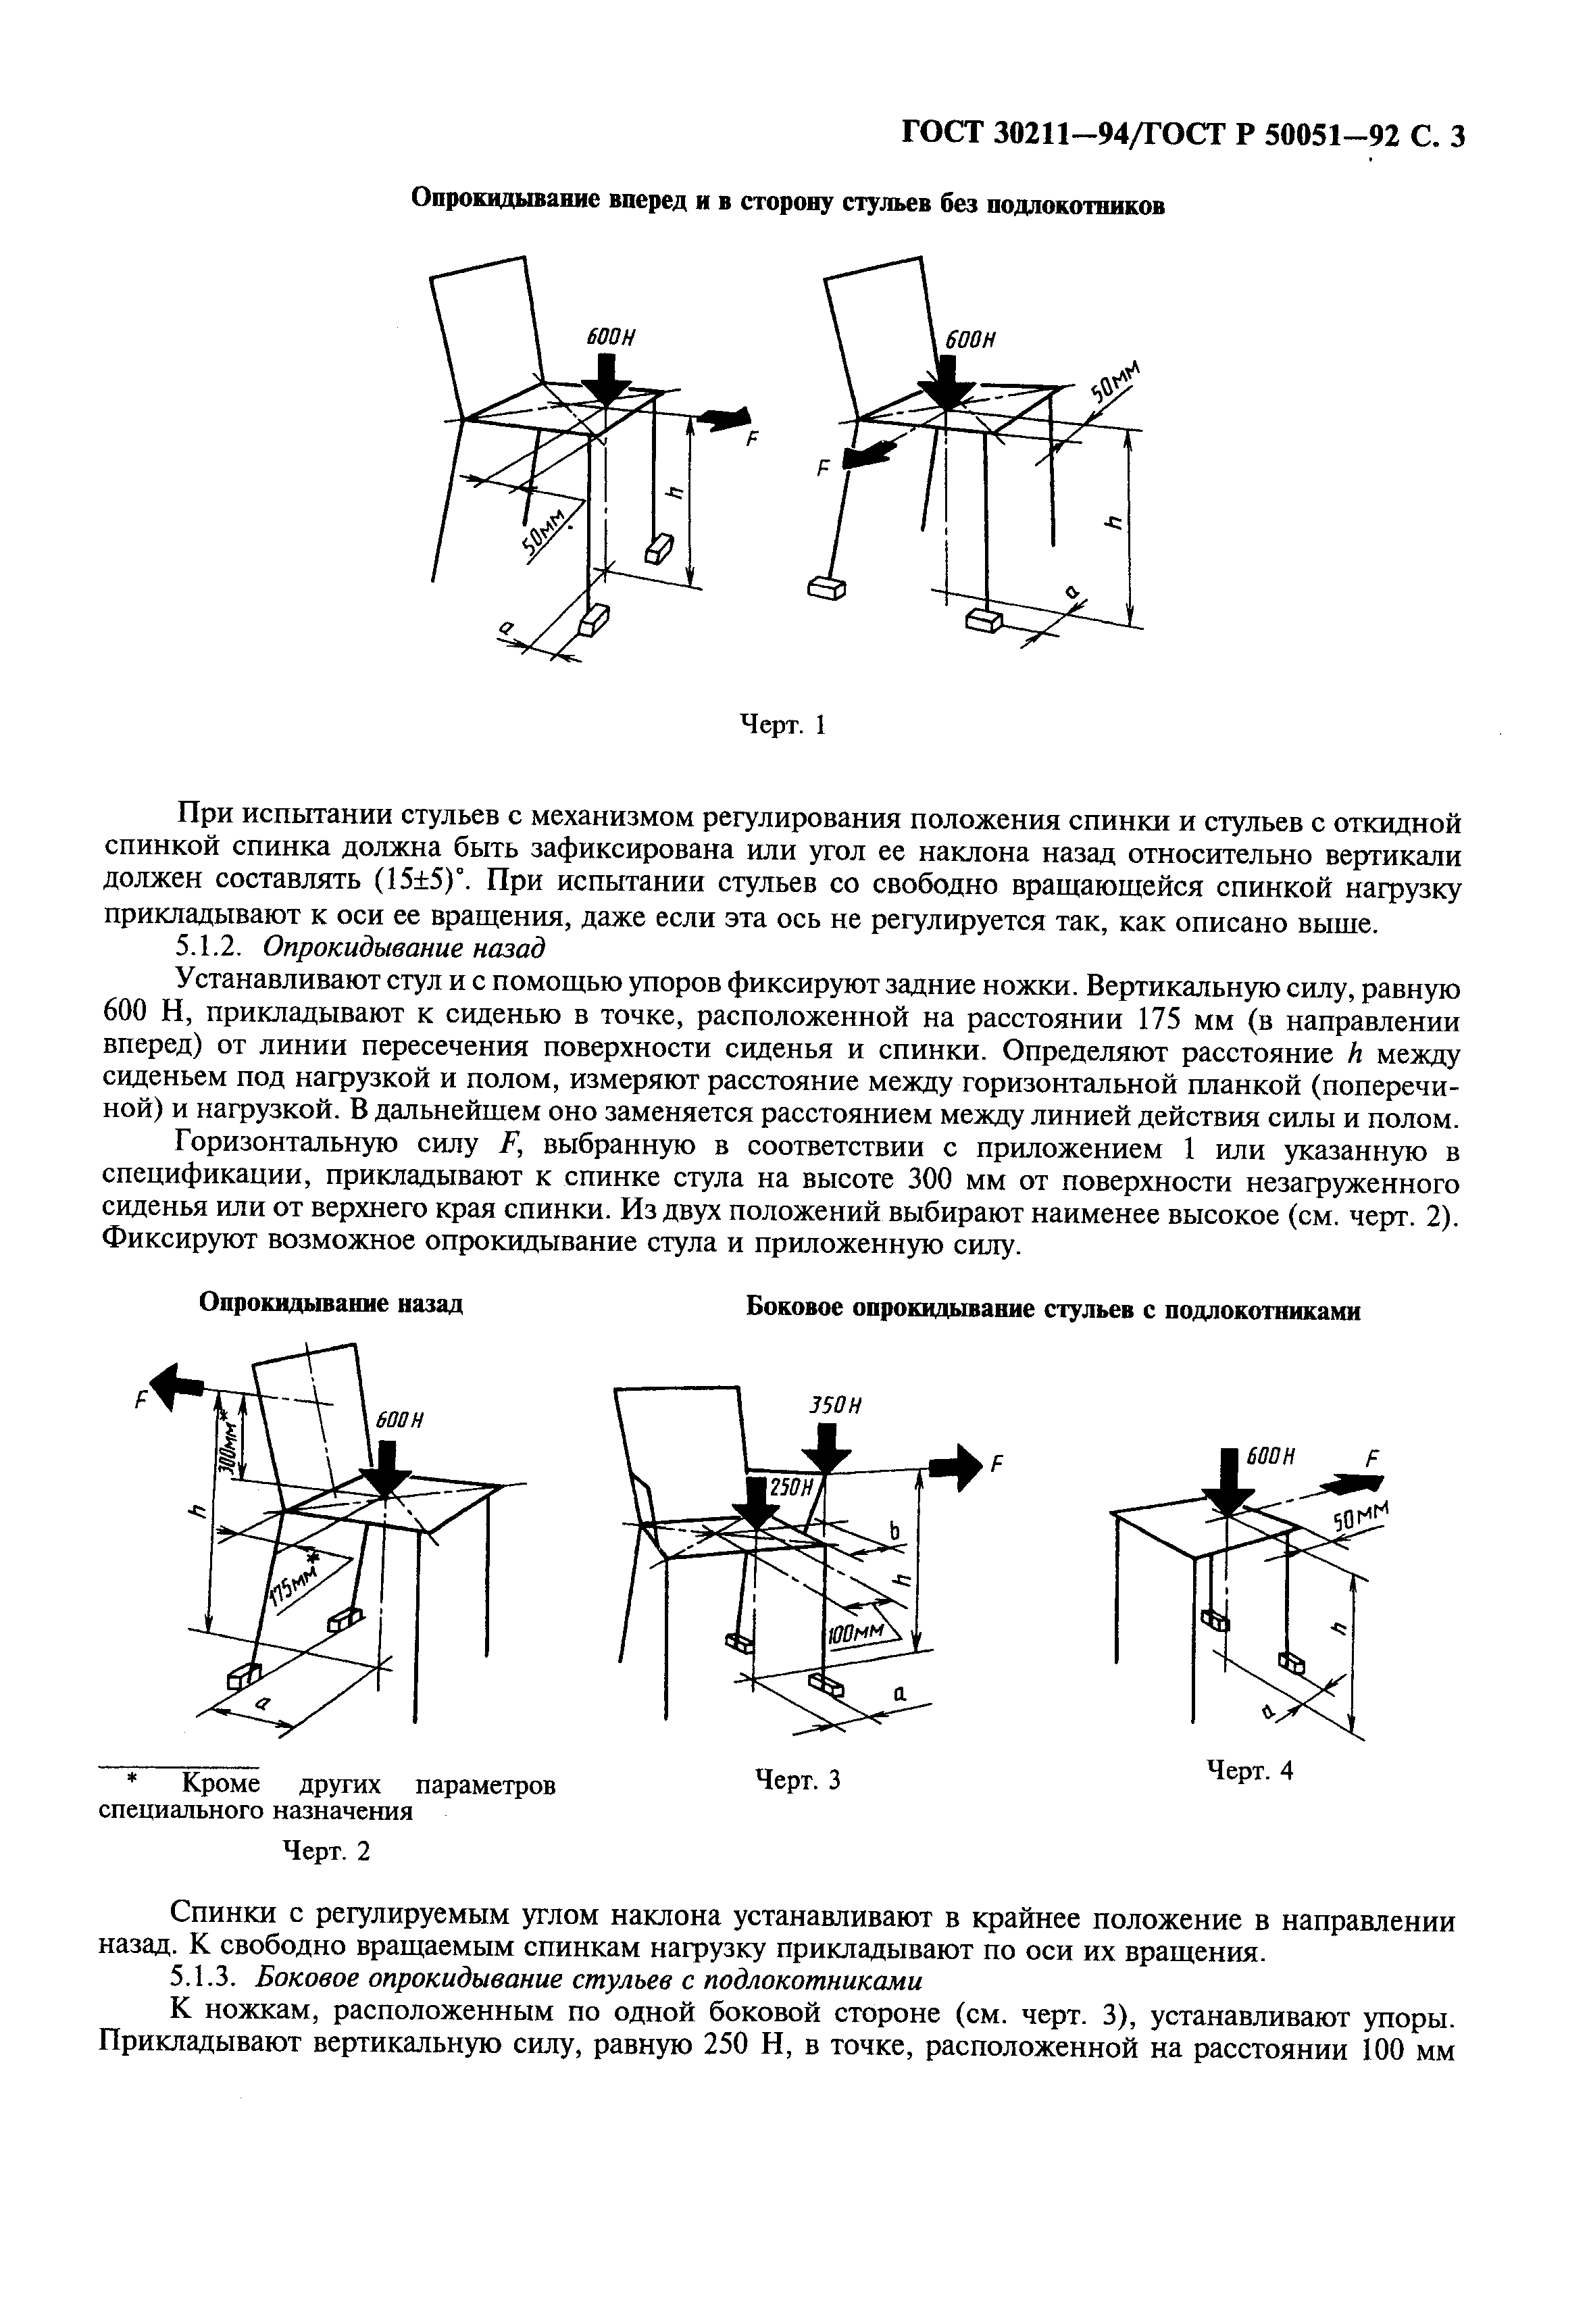 Размеры подлокотников стула по ГОСТ